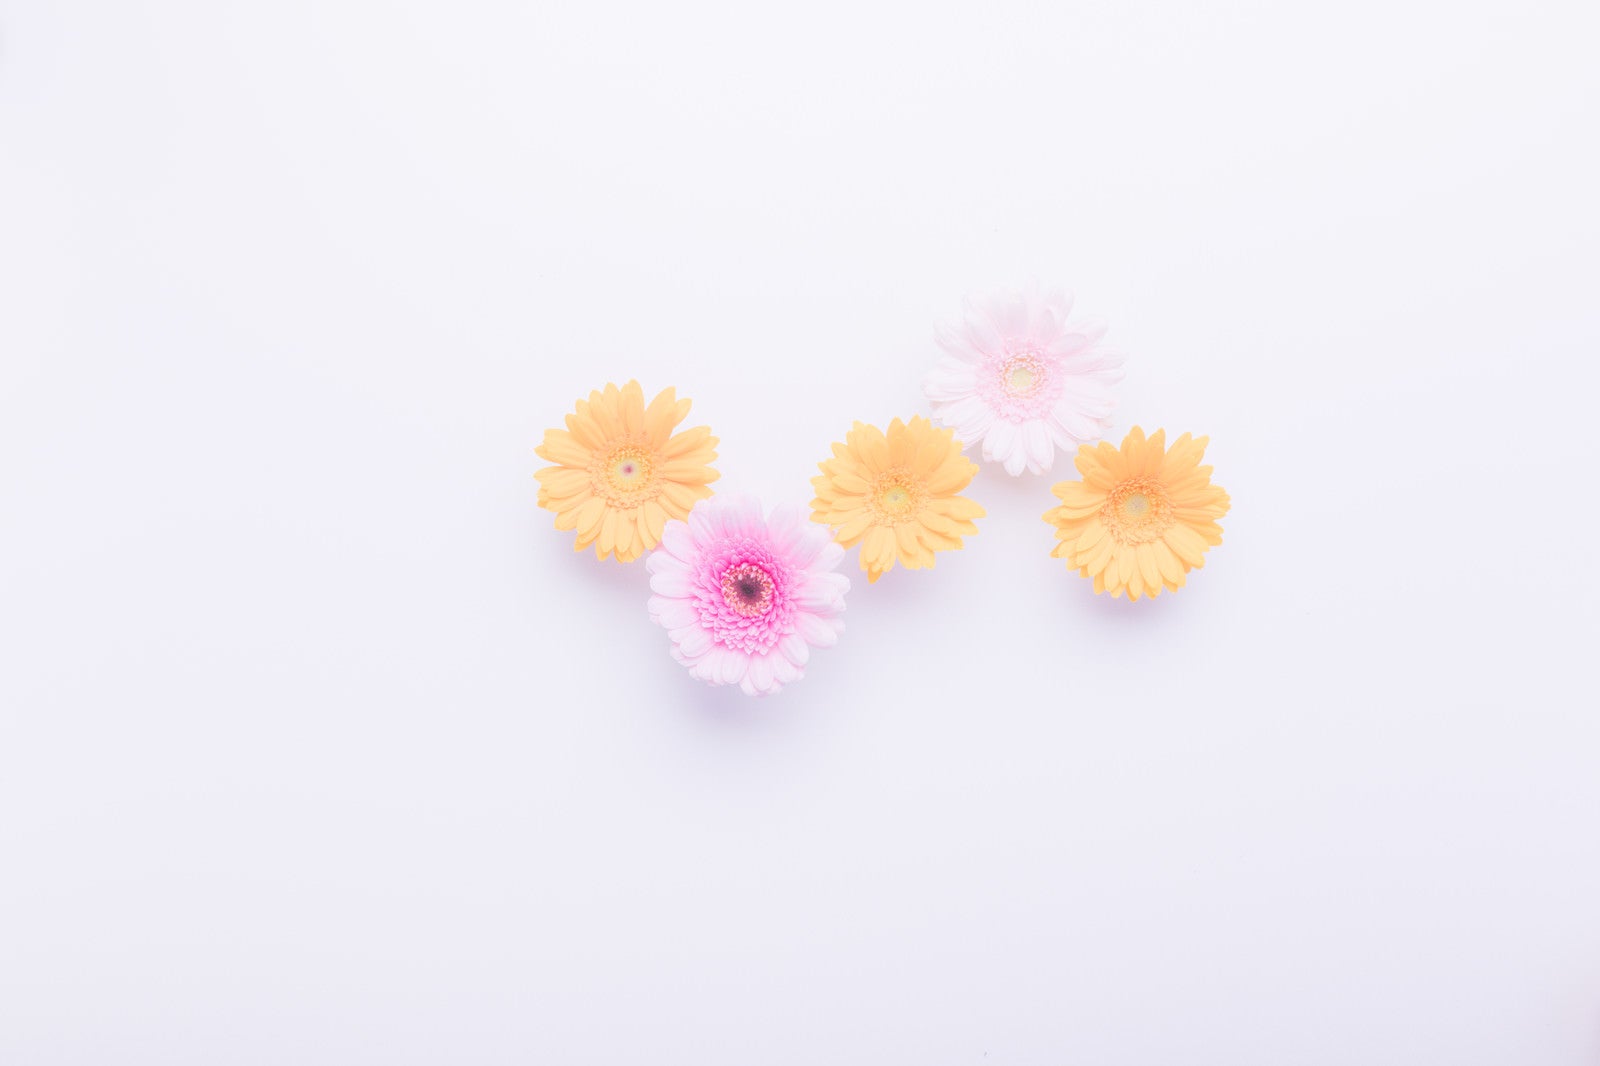 「黄色のお花たち」の写真